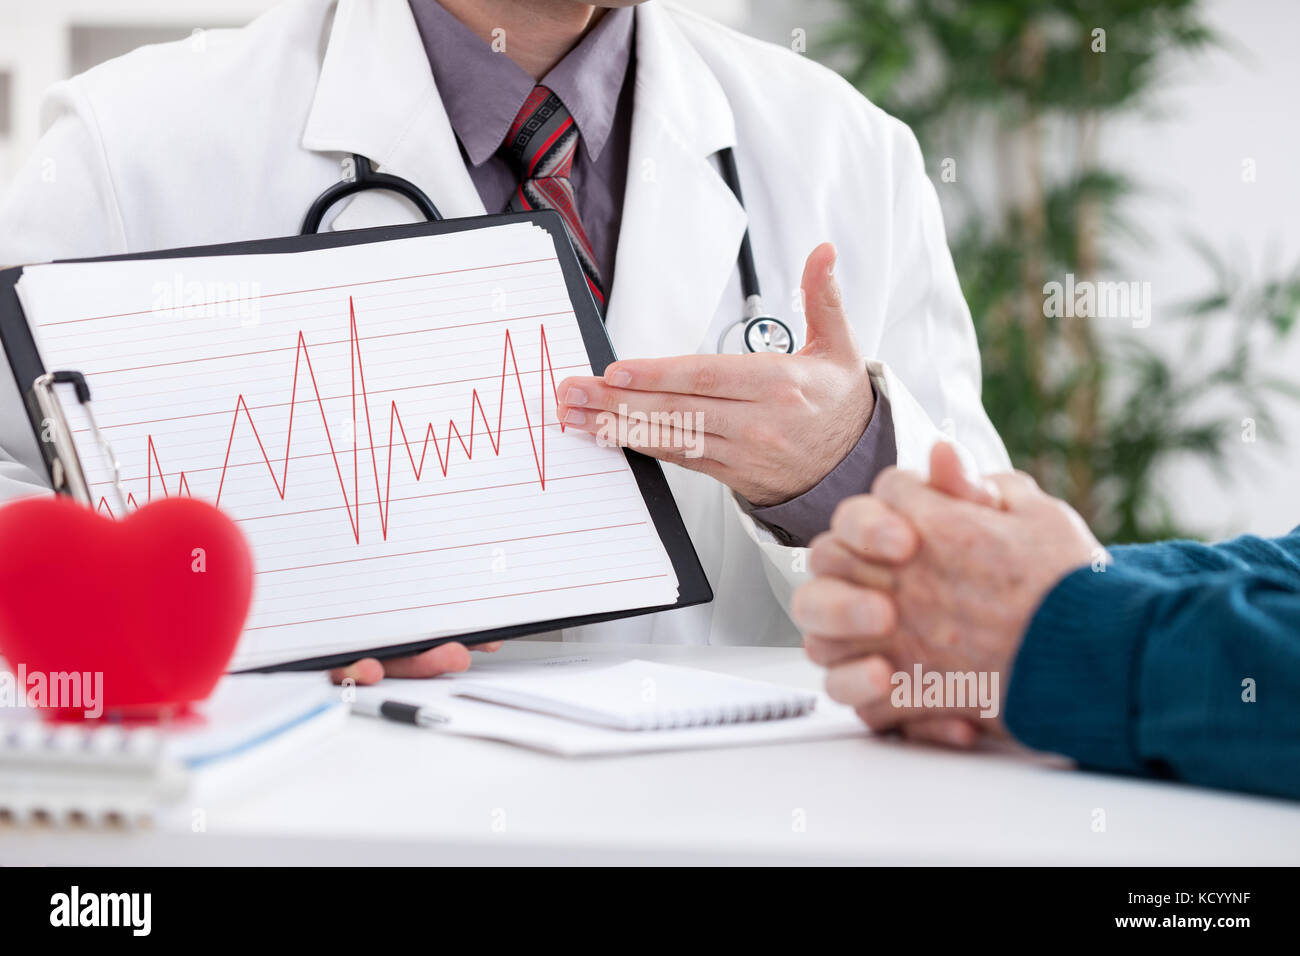 Kardiologe seinen Patienten ekg Ergebnisse zeigen Stockfoto